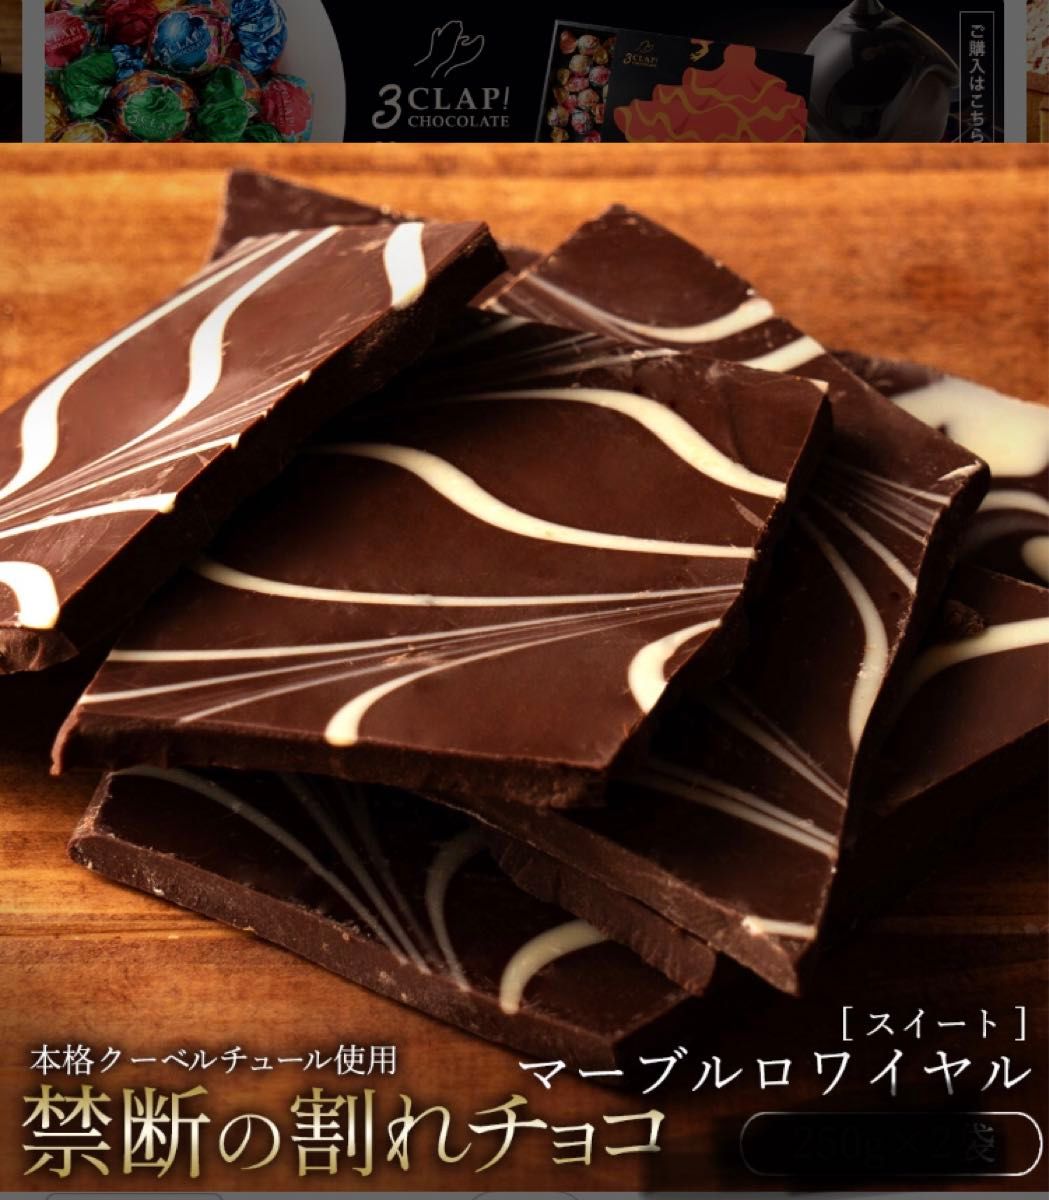 チョコレート チョコ スイーツ 本格クーベルチュール使用 割れチョコ マーブルロワイヤル(スイート) 250g 一袋お試し